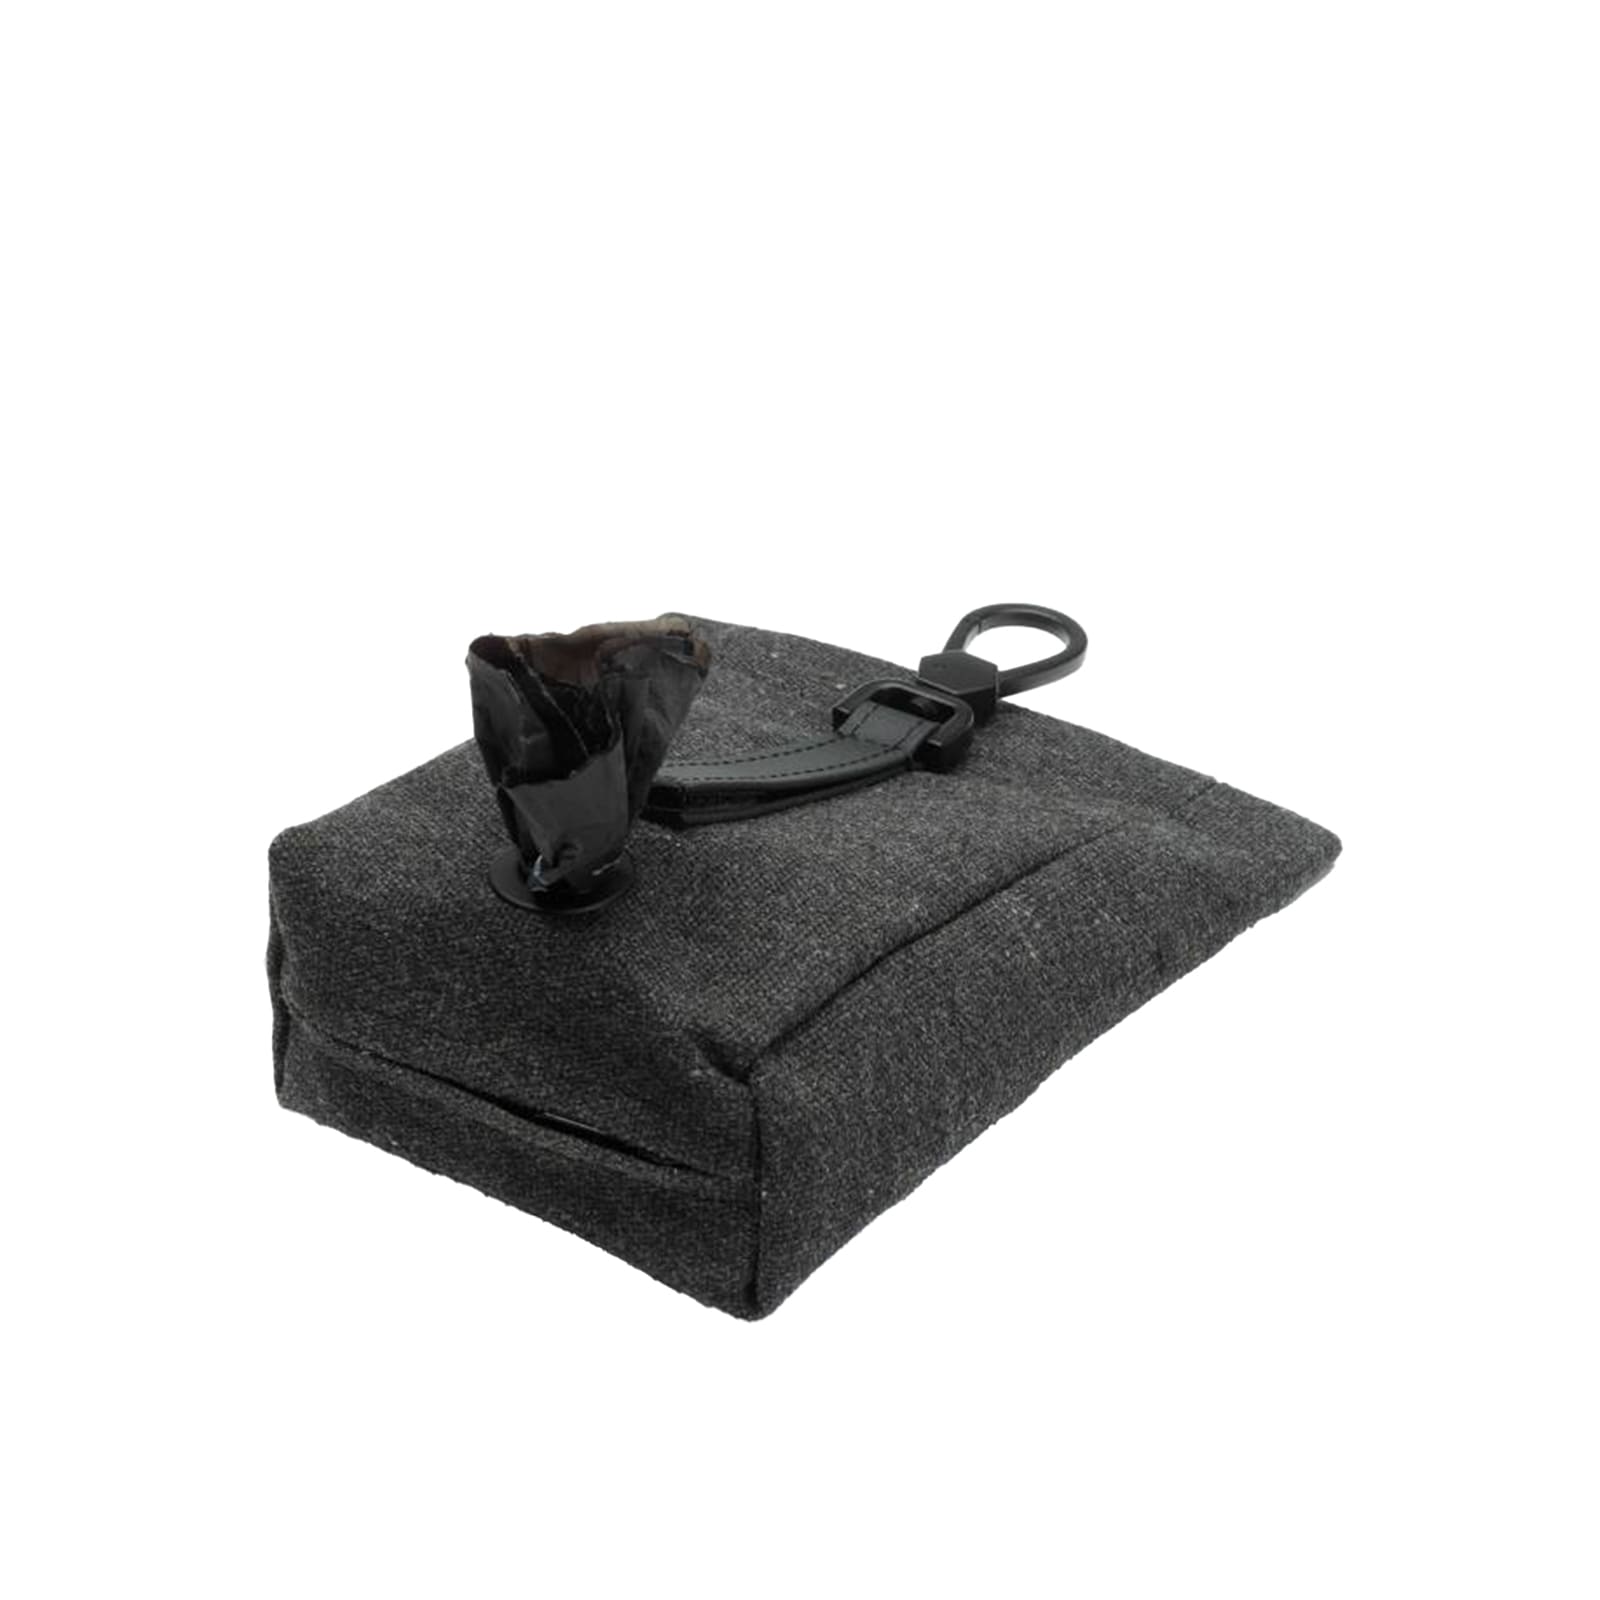 Schwarze Tasche mit Metallkarabiner und integriertem Kotbeutelspender